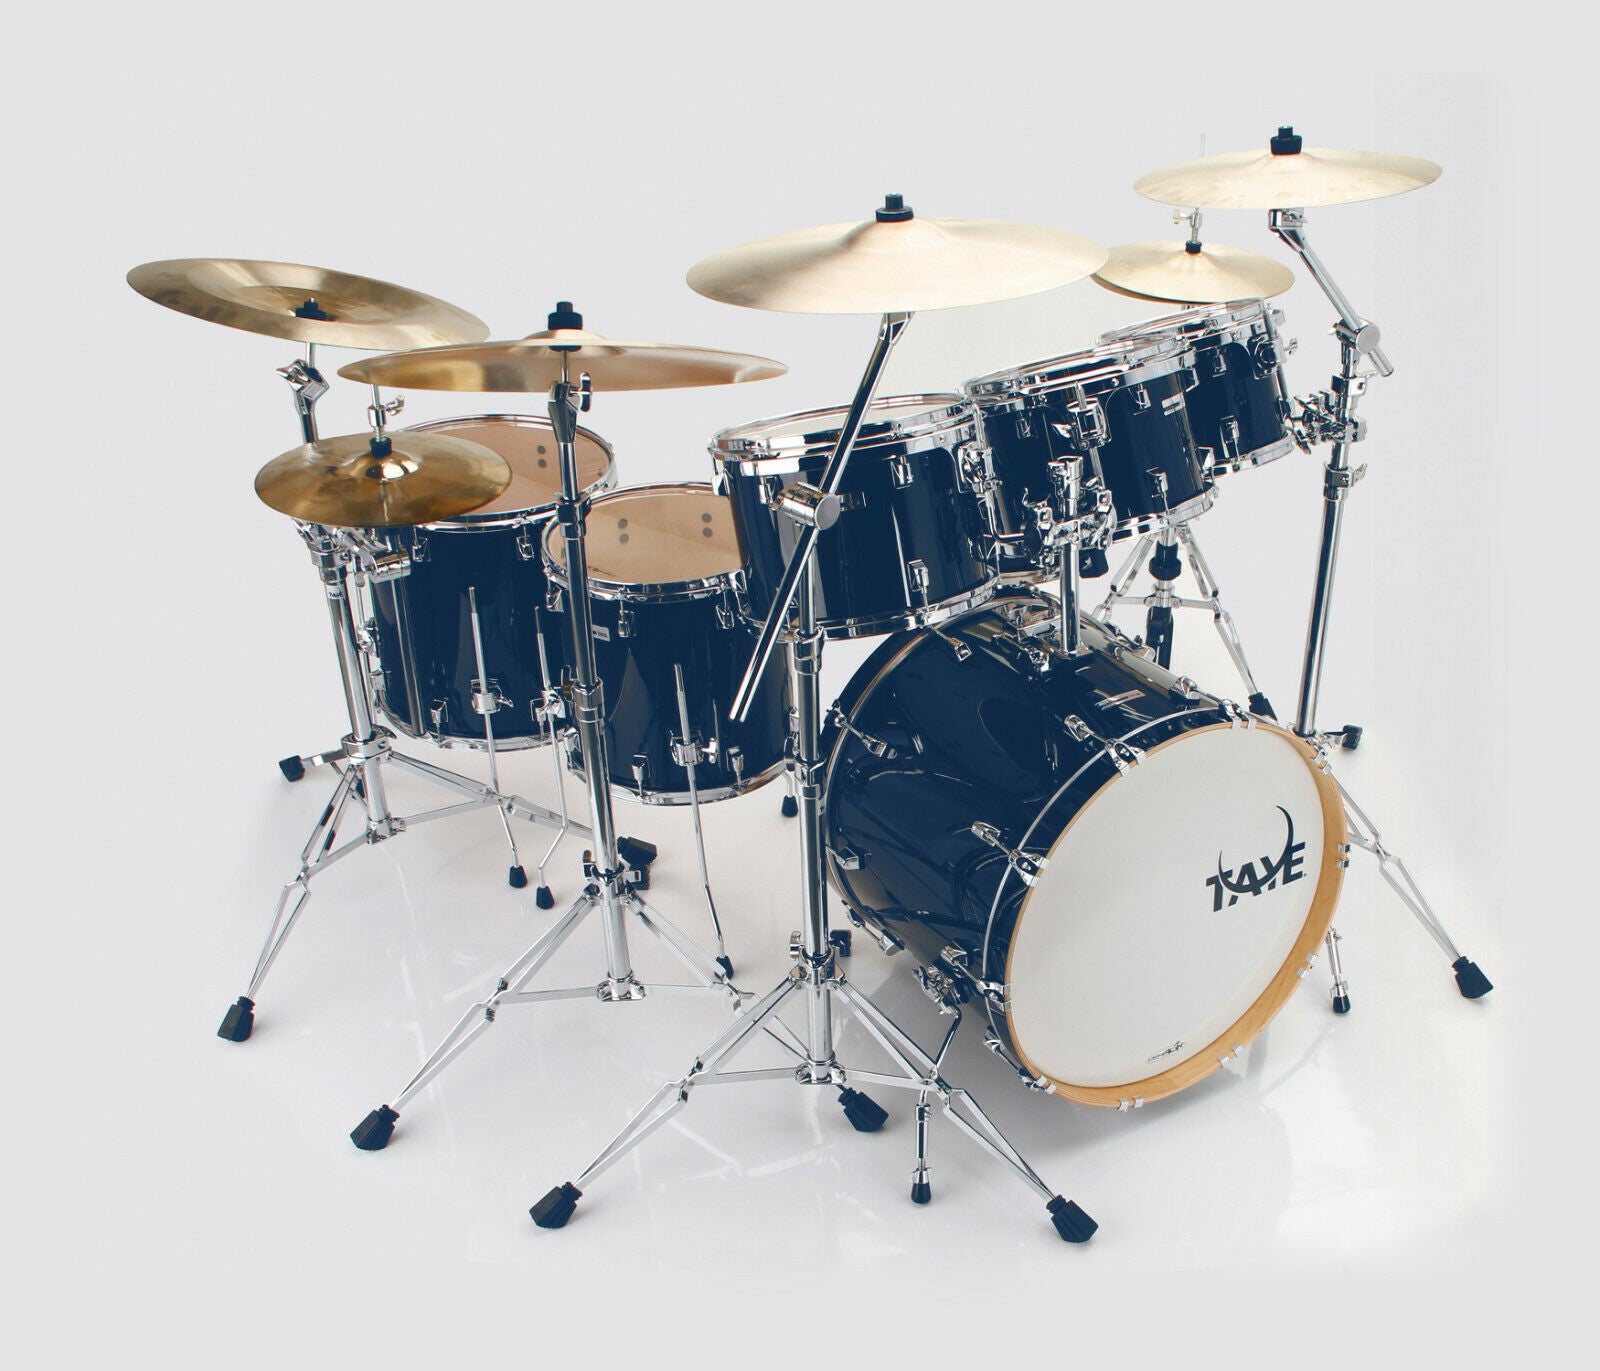 Drum Kit 4 Piece TAYE Studio Maple Blue 22" Bass Drums Incl Hardware Set - D24